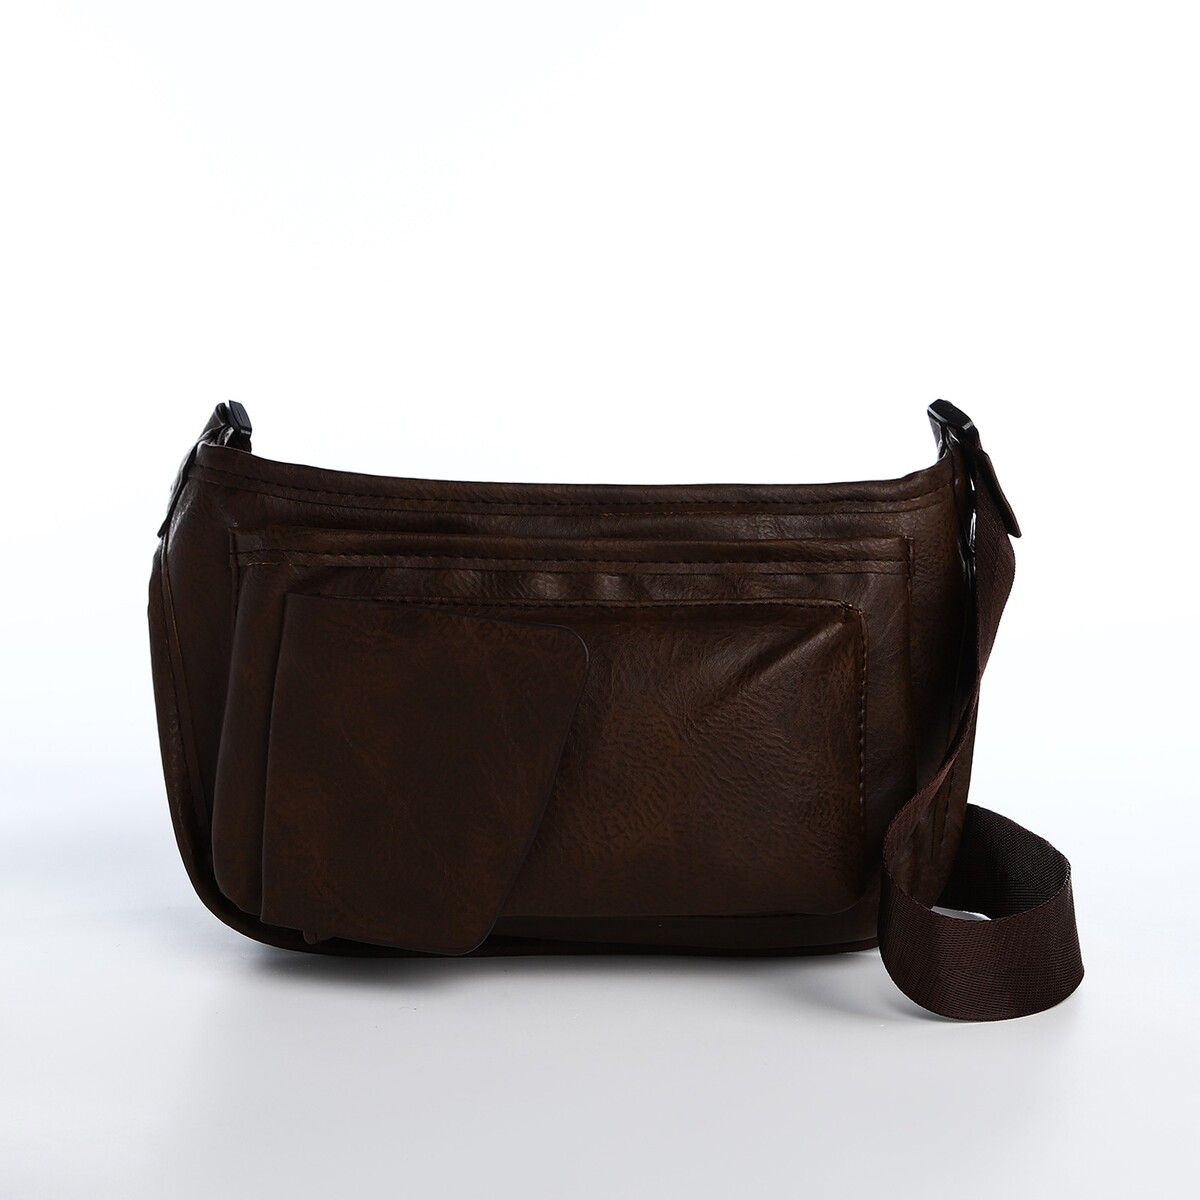 Поясная сумка на молнии, 3 наружных кармана, цвет коричневый поясная сумка на молнии 3 наружных кармана зацеп на ногу коричневый